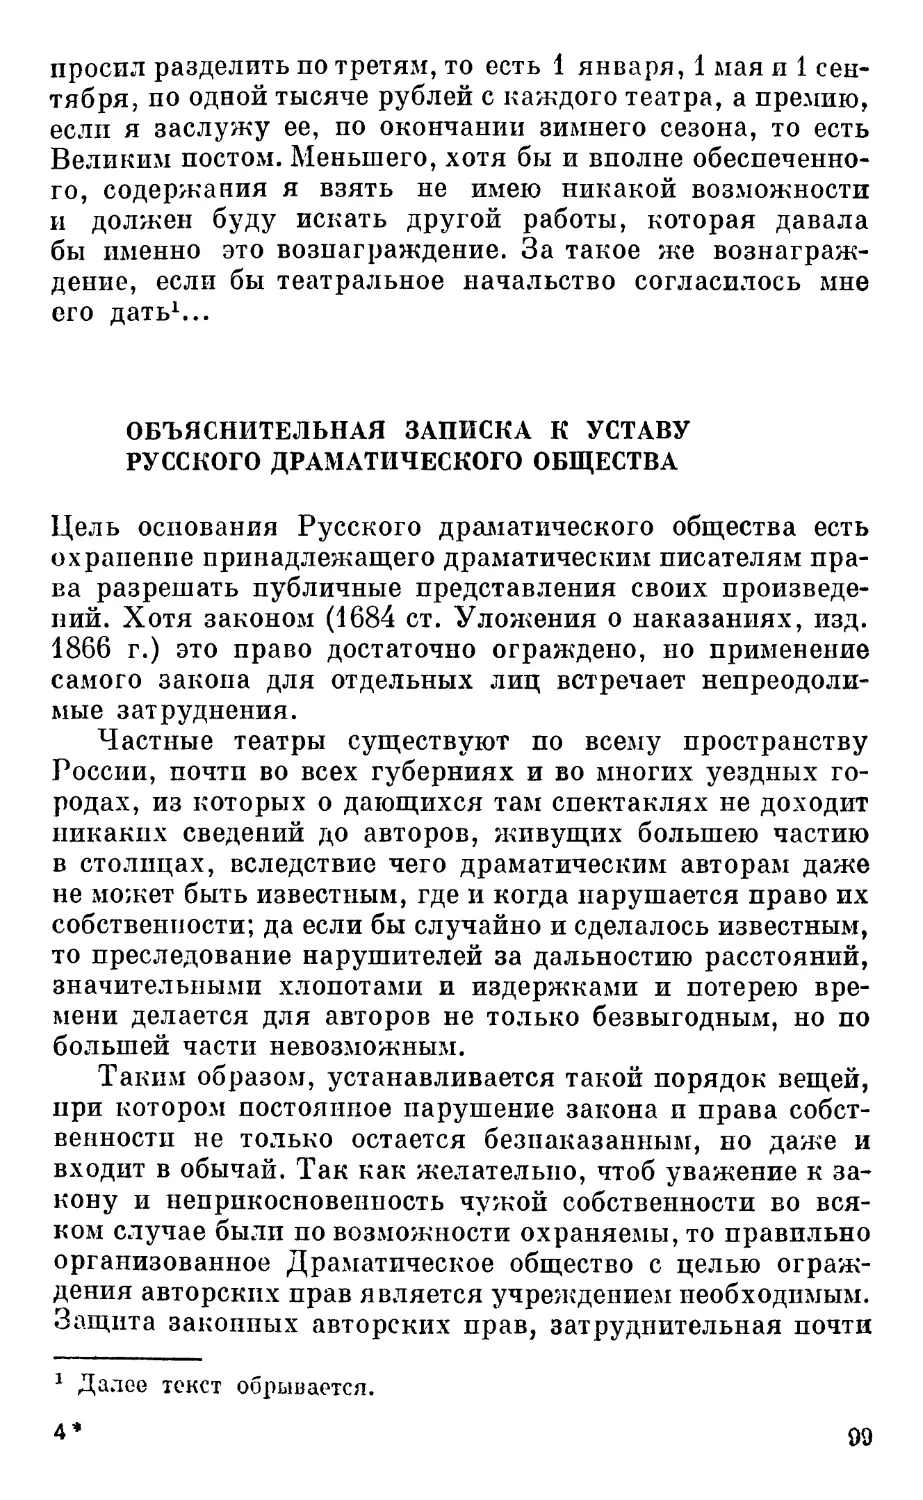 Объяснительная записка к Уставу Русского драматического общества